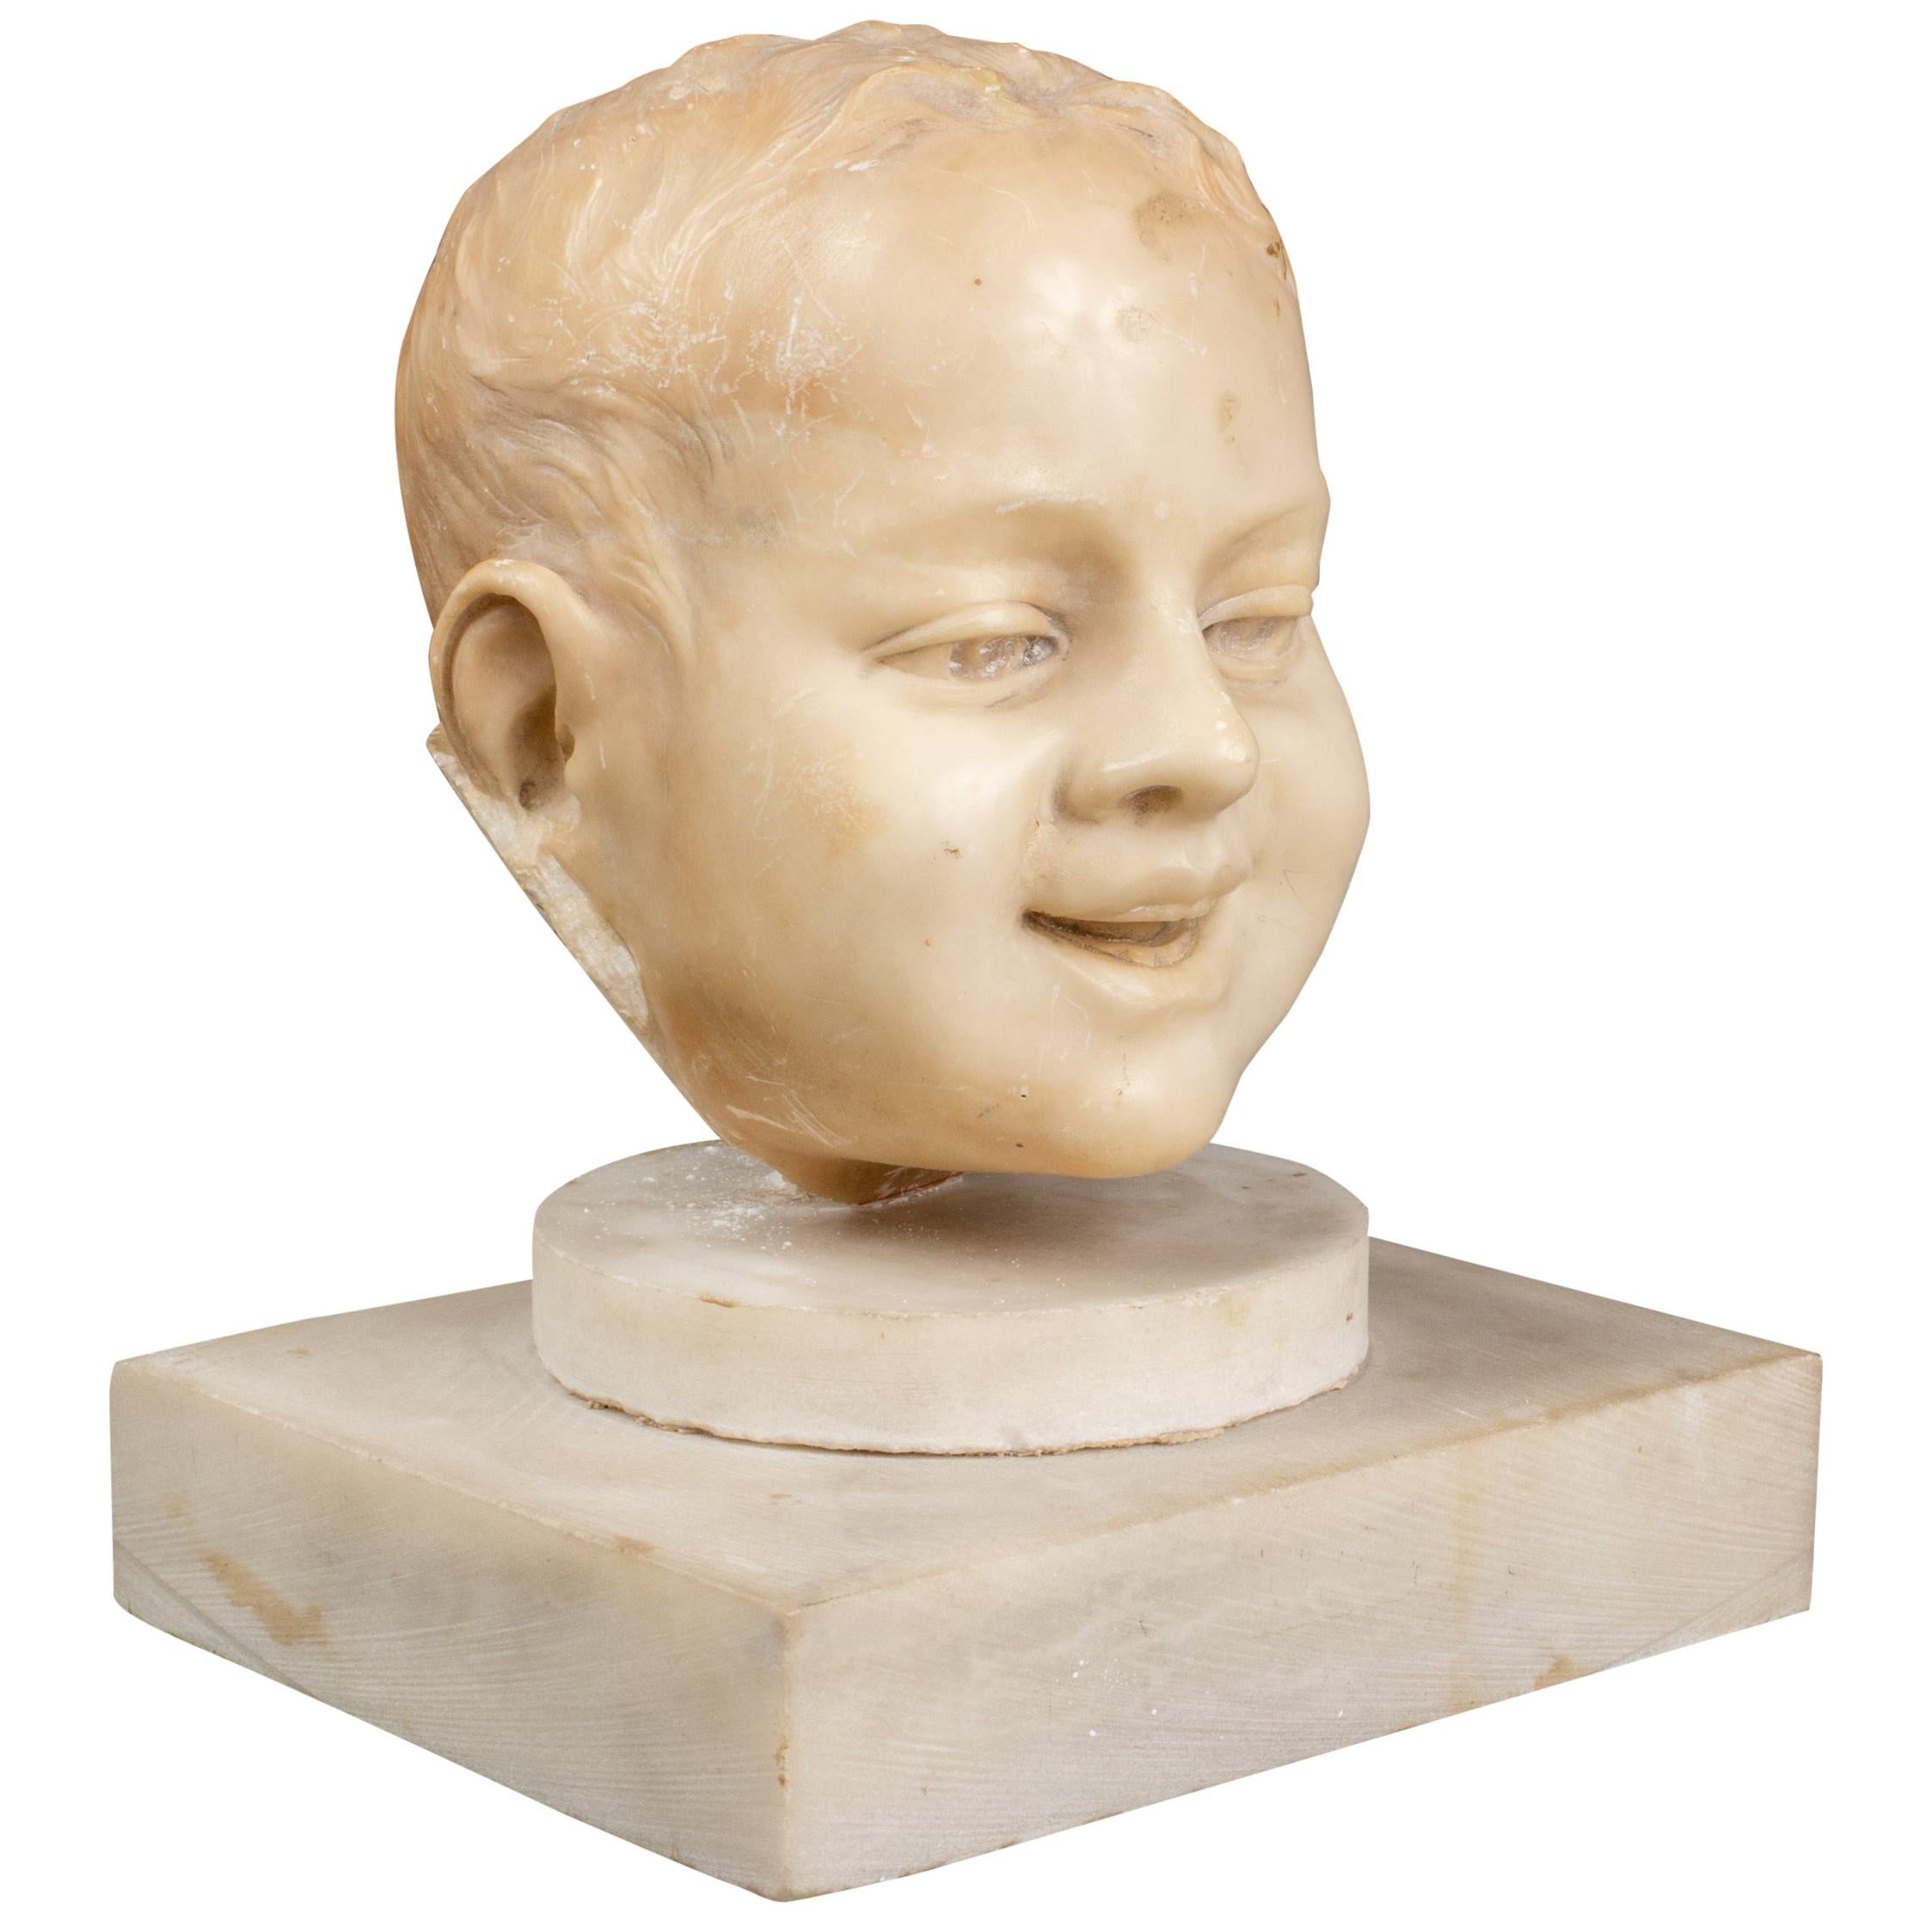 Geschnitztes Marmorfragment eines jungen Jungen